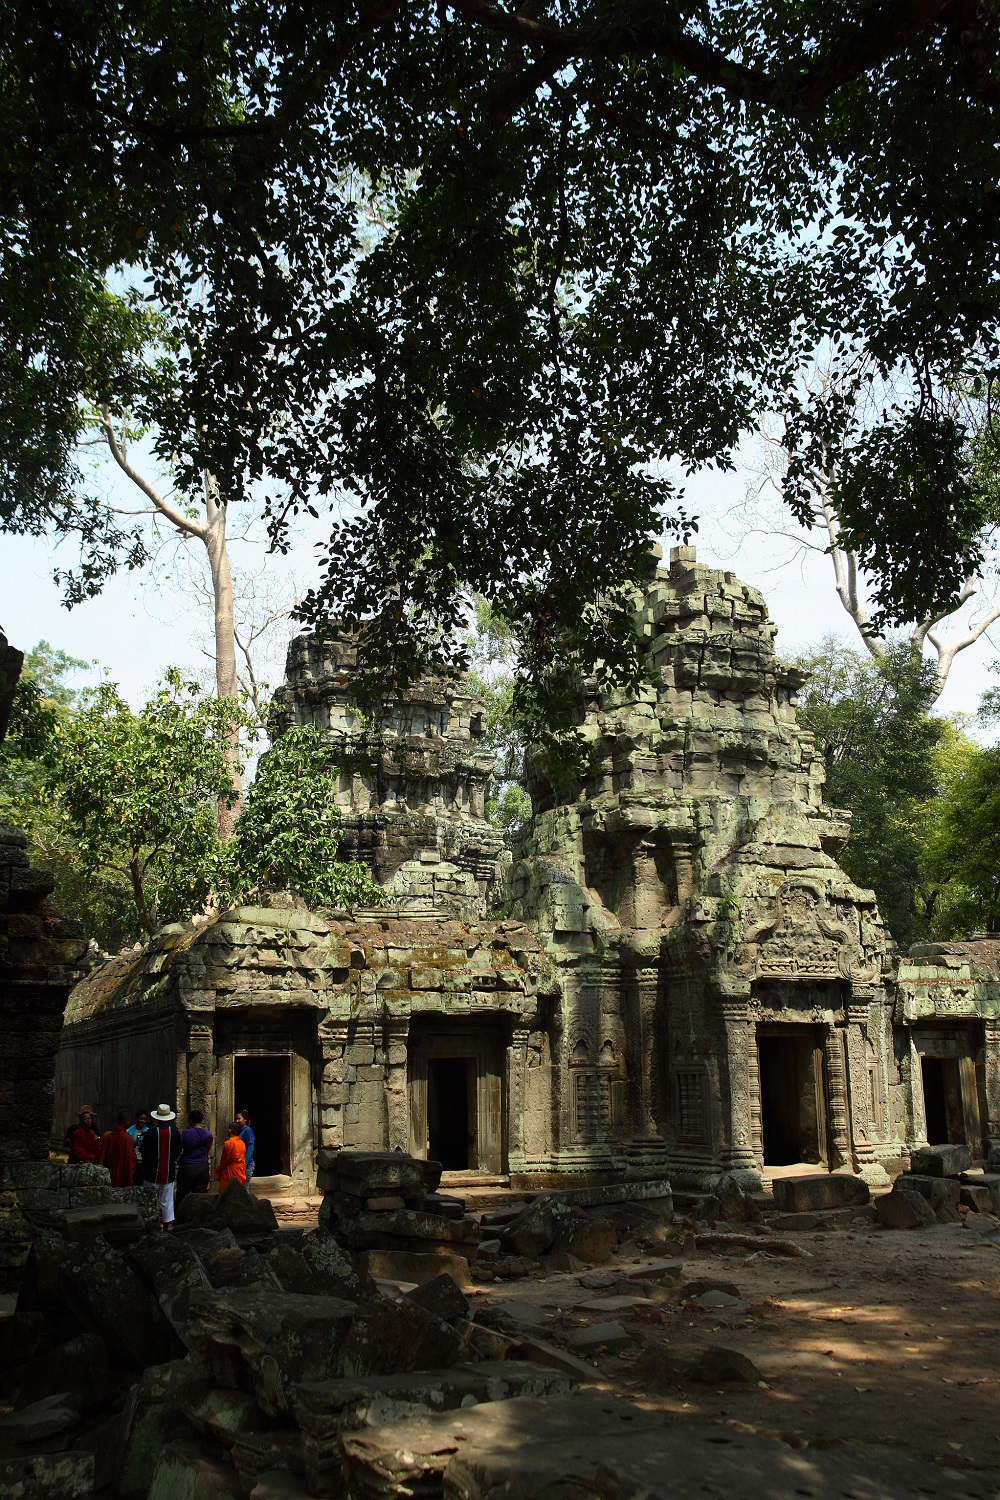   Приключения: Ангкор Ват — ужас и мистика древних. Храм древних богов кхмеров - фото 1